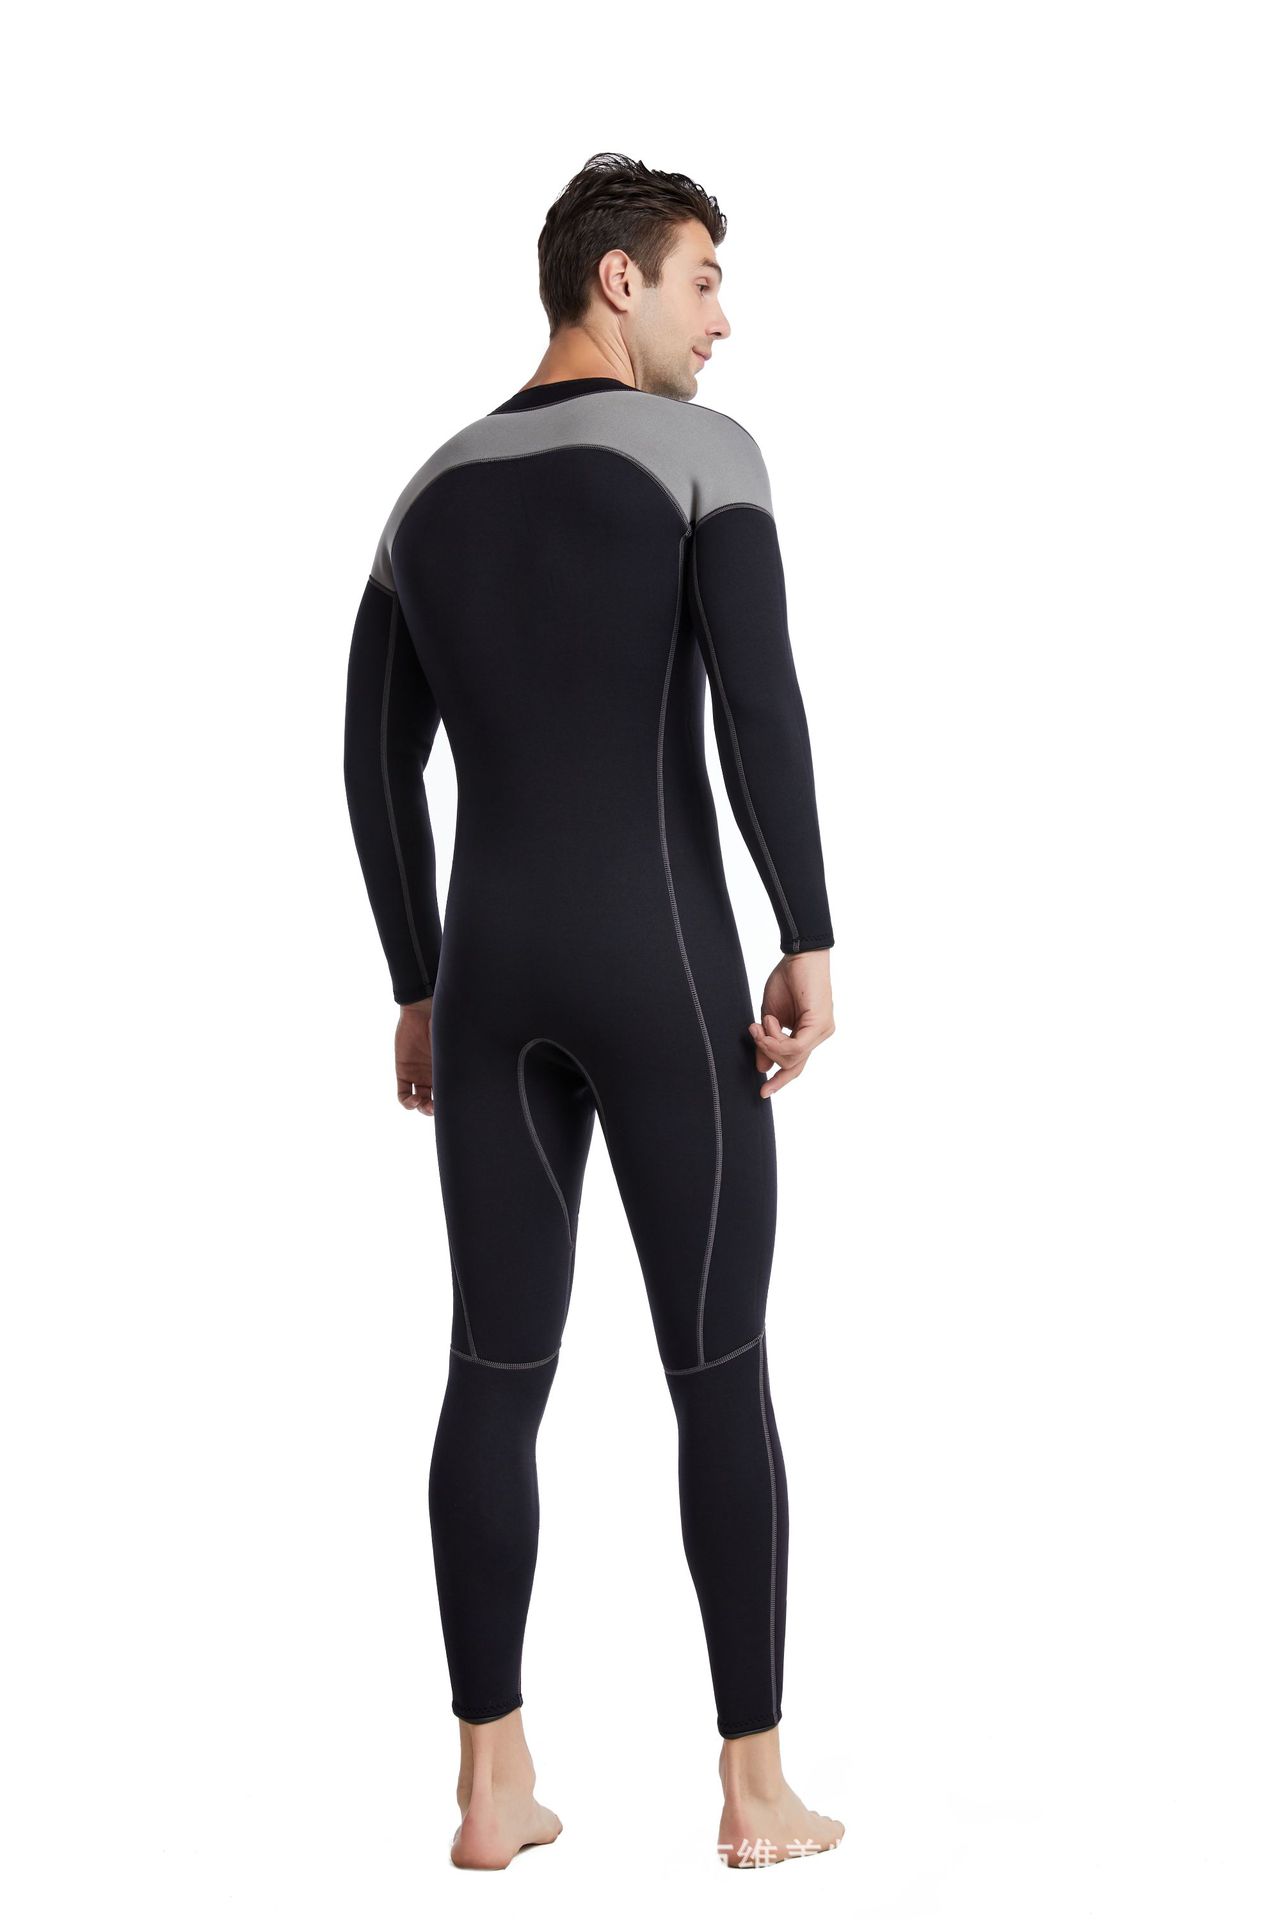 新款现货3mm潜水服冲浪衣浮潜深潜冲浪服水母衣防划保暖潜水衣